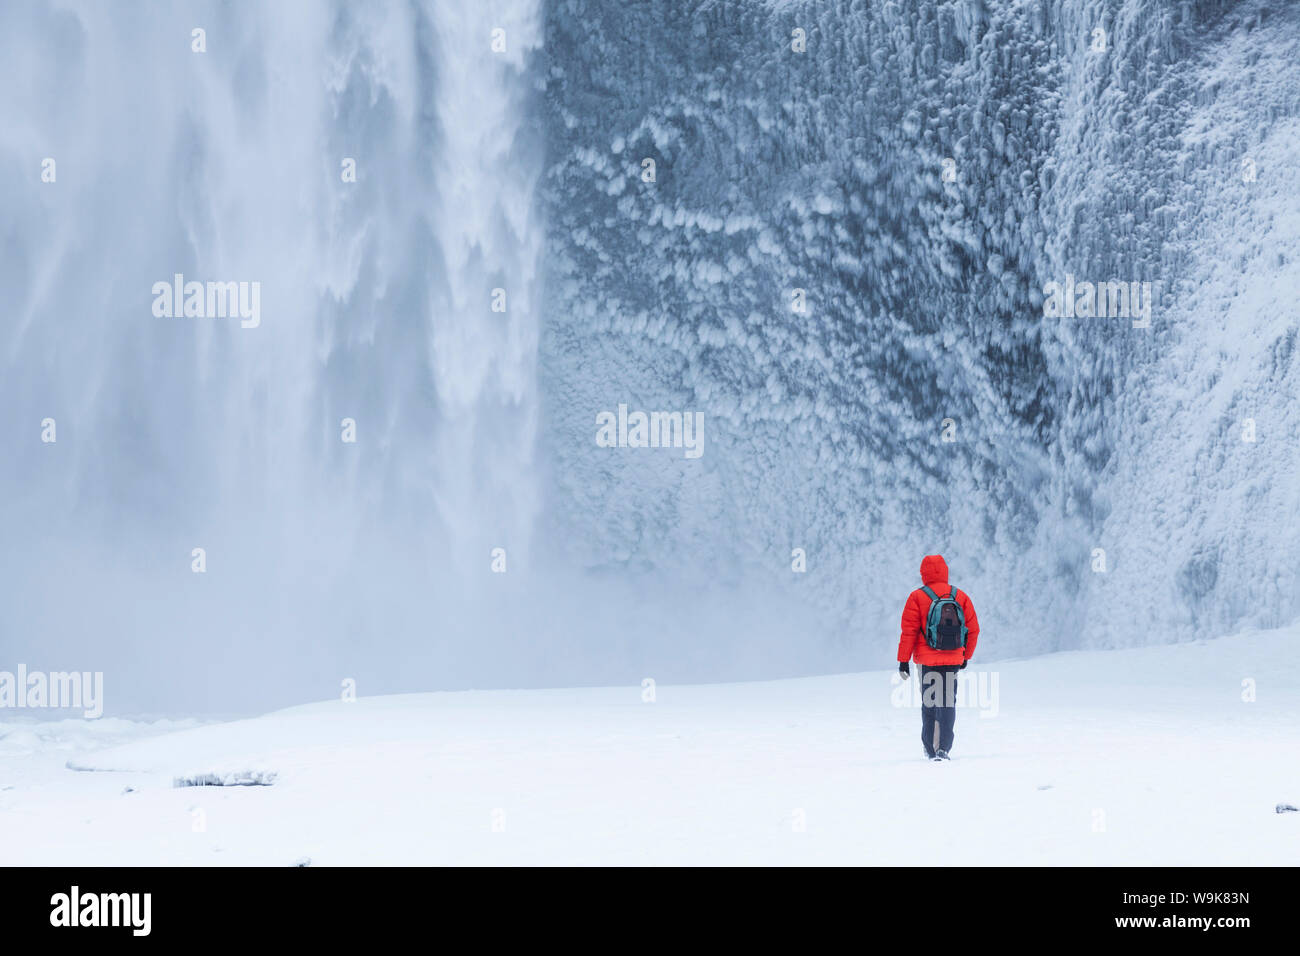 Una persona de chaqueta roja de caminar en la nieve hacia la Catarata Skogafoss Skogar en invierno, en el sur de Islandia, Islandia, las regiones polares Foto de stock